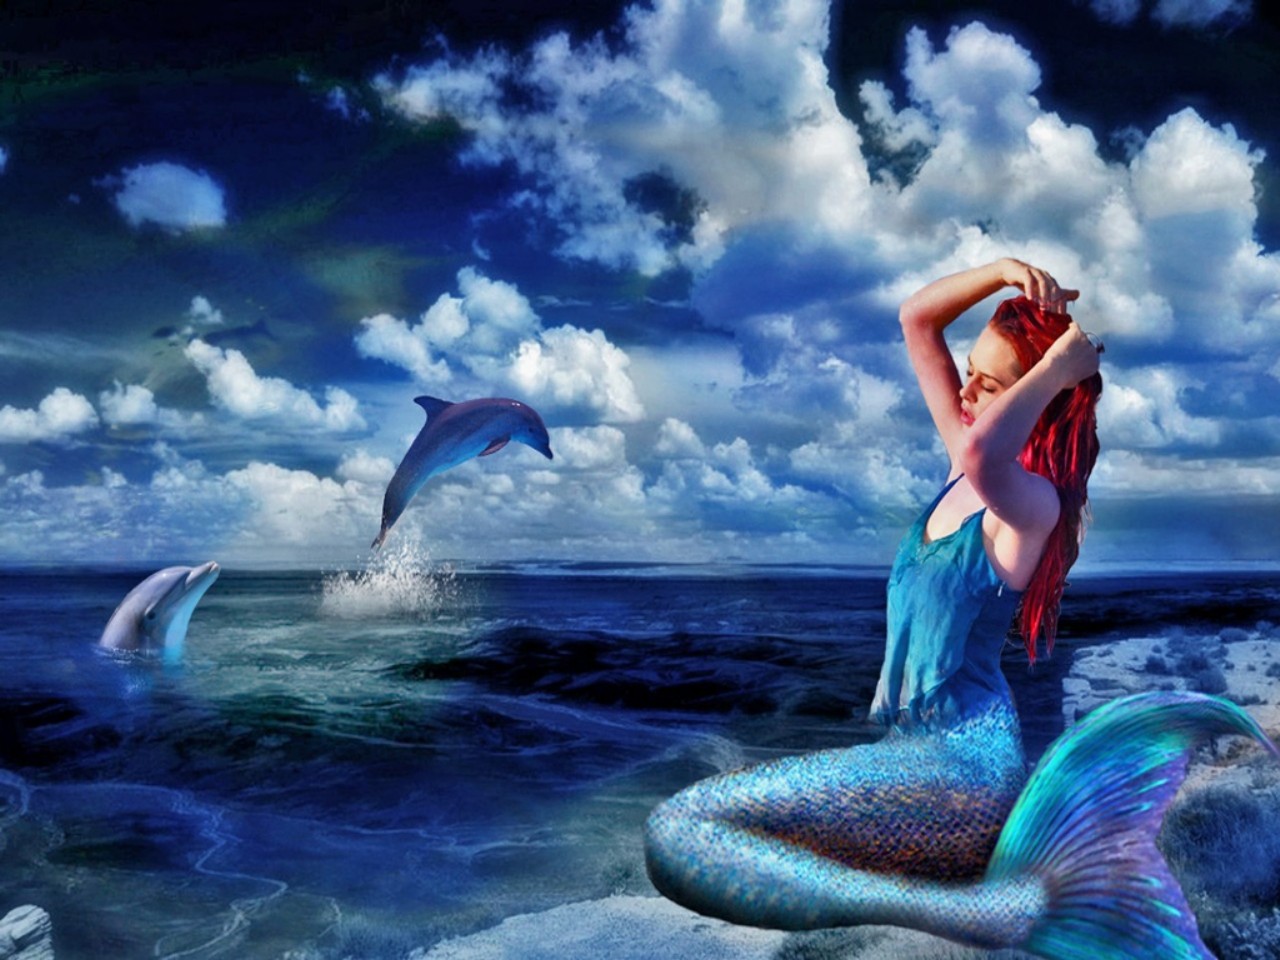 Mermaid2 By Alejandro Mirabal